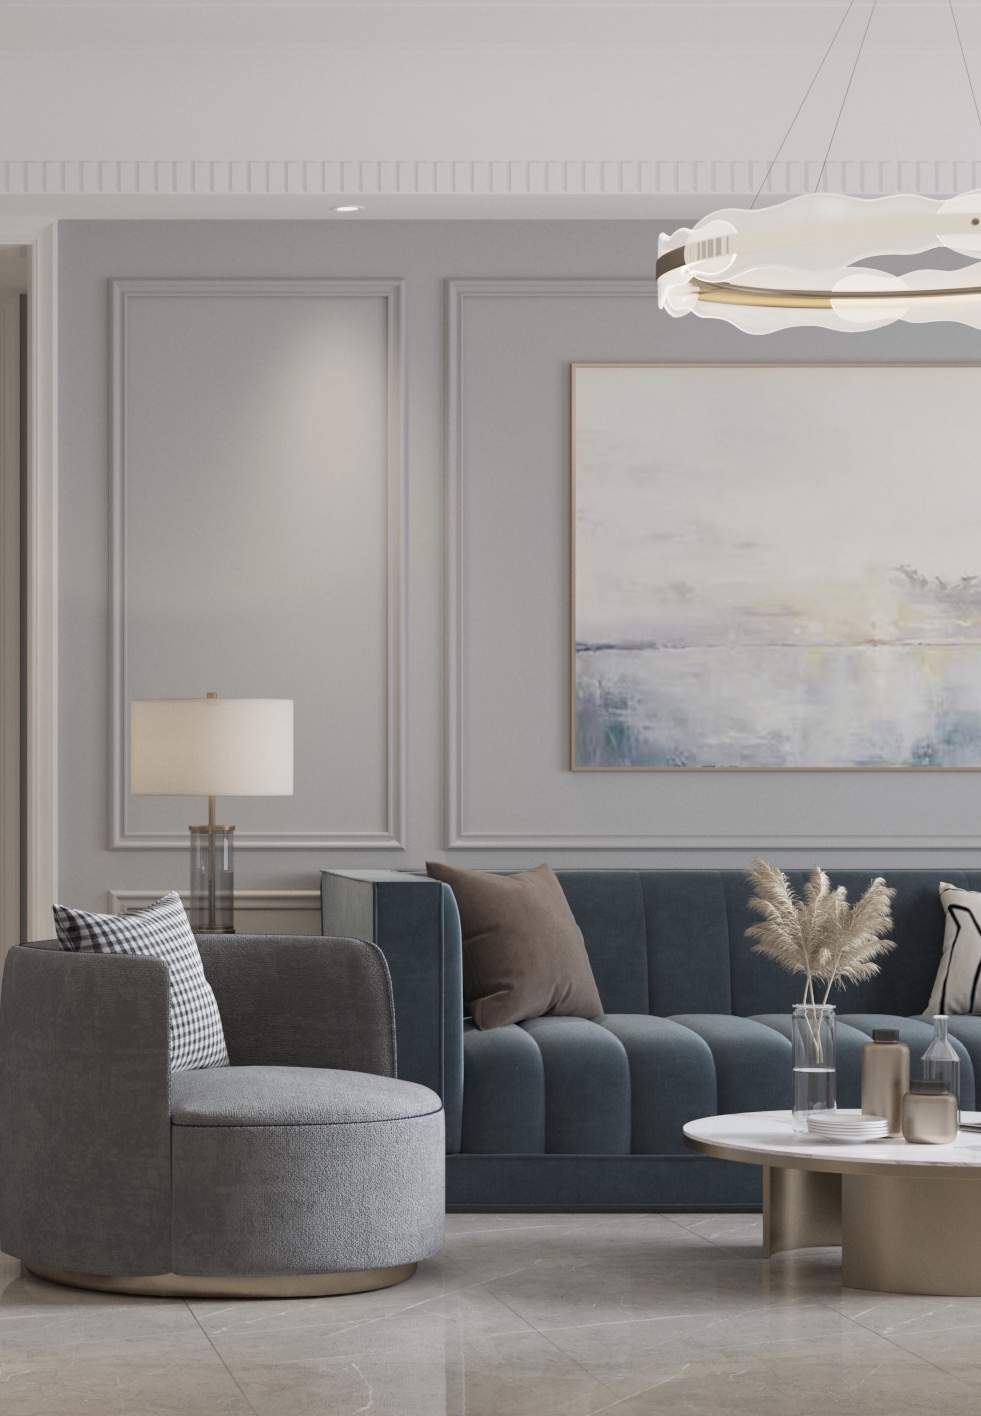 客厅沙发装修效果图灰蓝色系温馨的学区之家现代简约客厅设计图片赏析